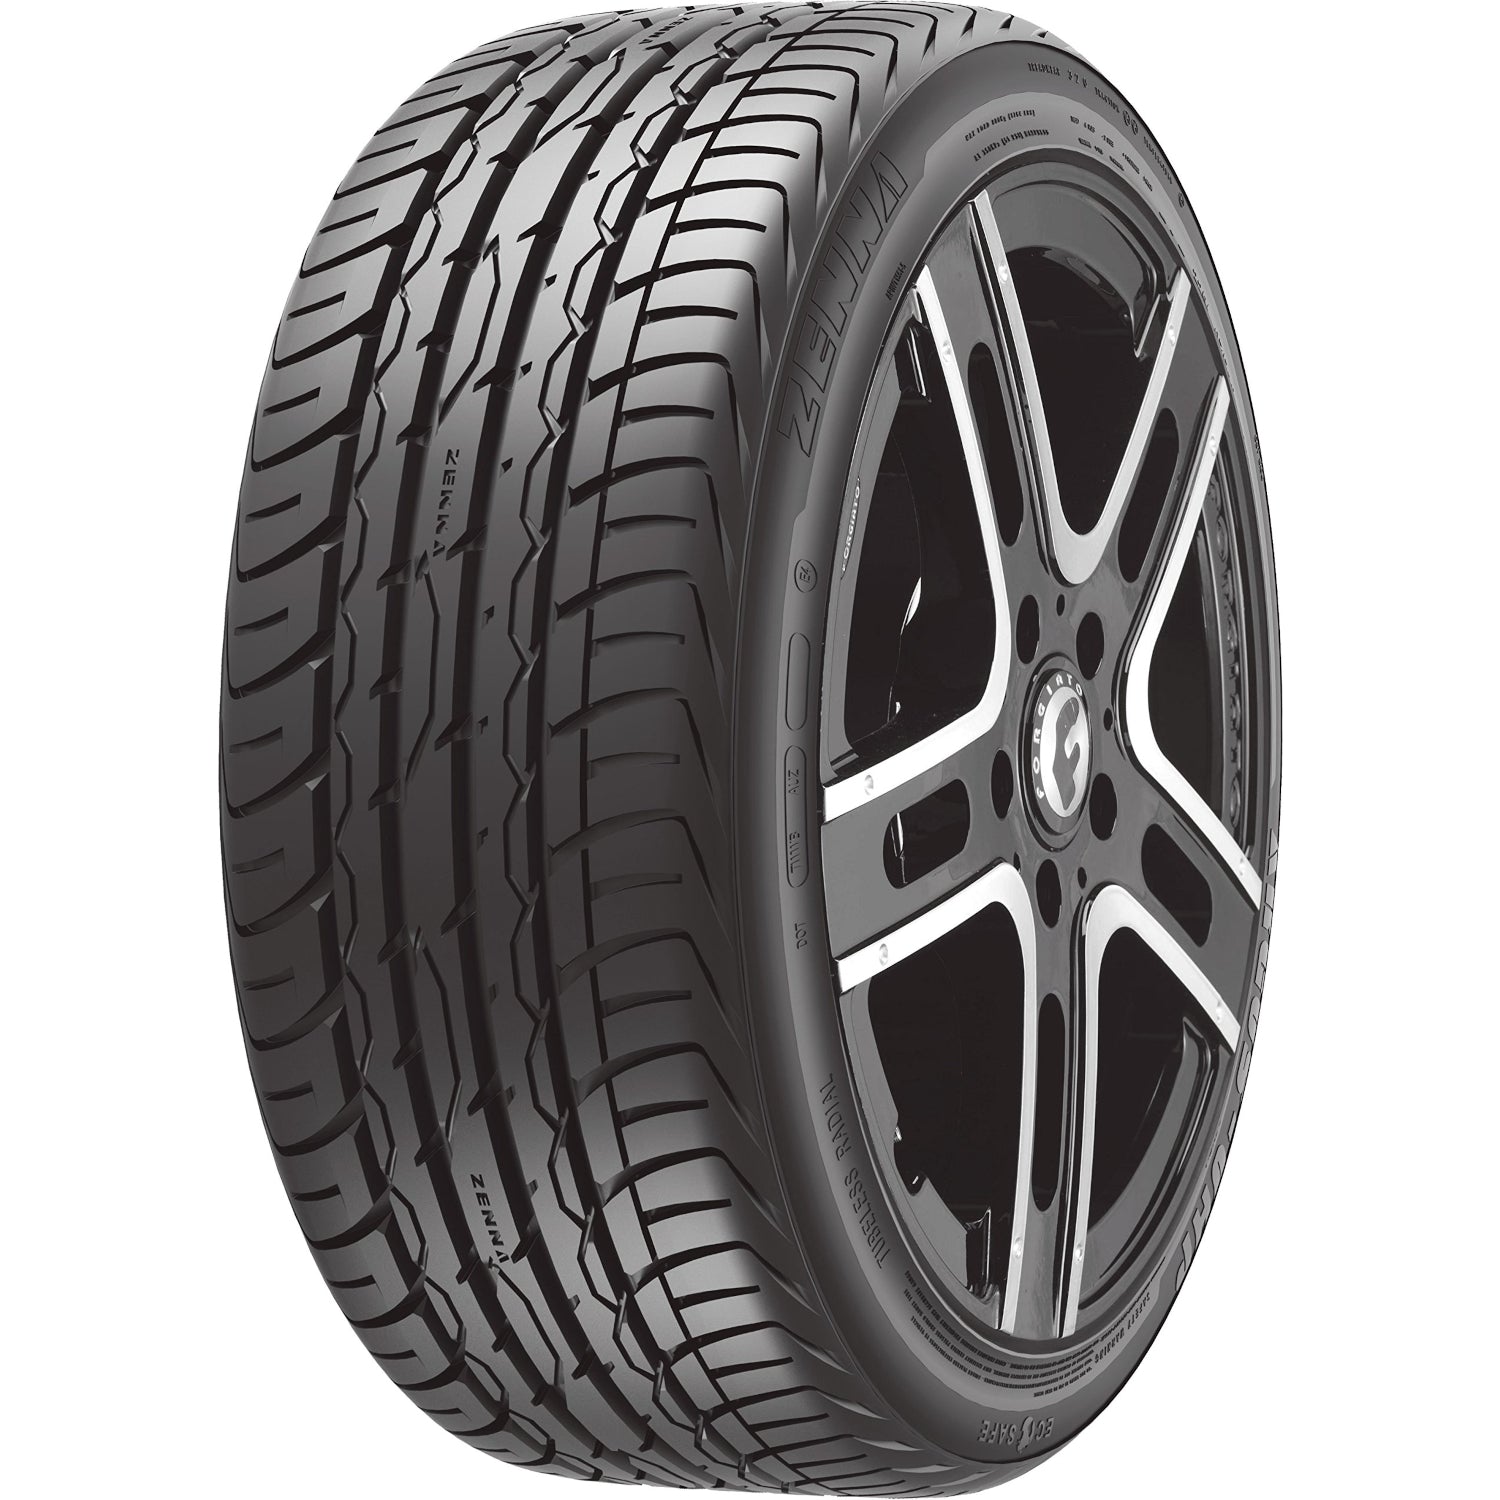 Zenna Argus UHP 275/55ZR20 (31.9x10.8R 20) Tires